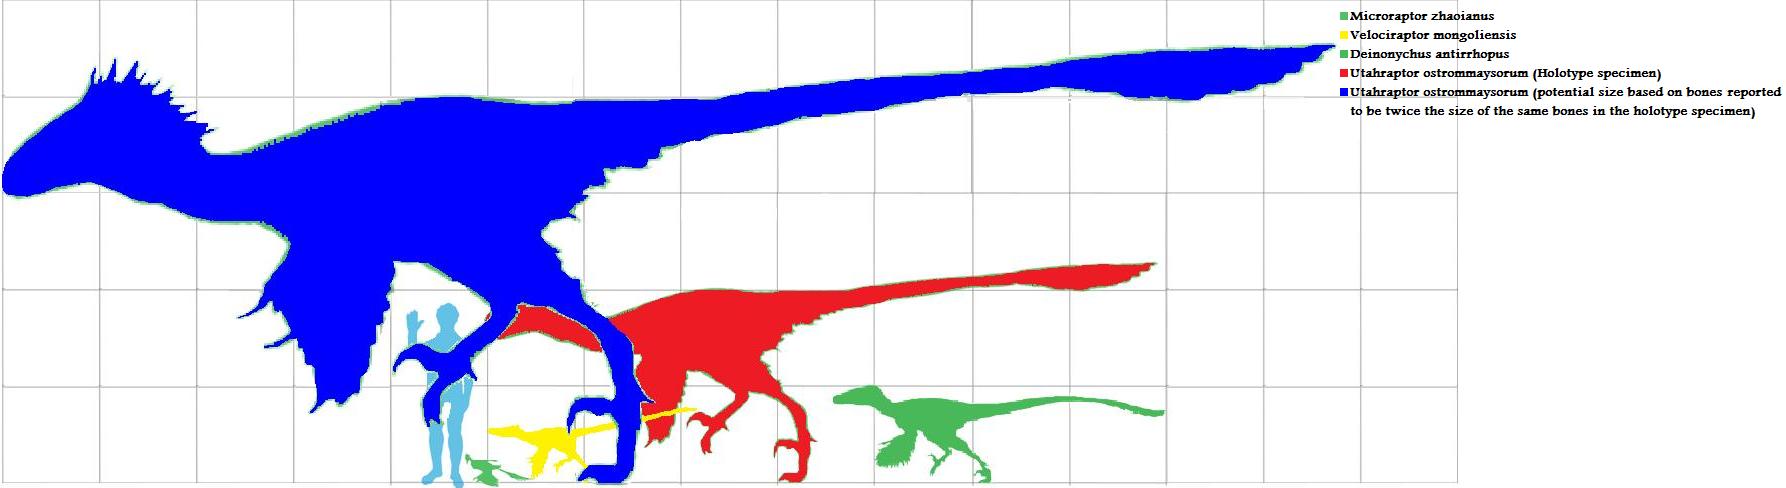 Les dinosaures Echelle-de-taille-dromaeosaurides